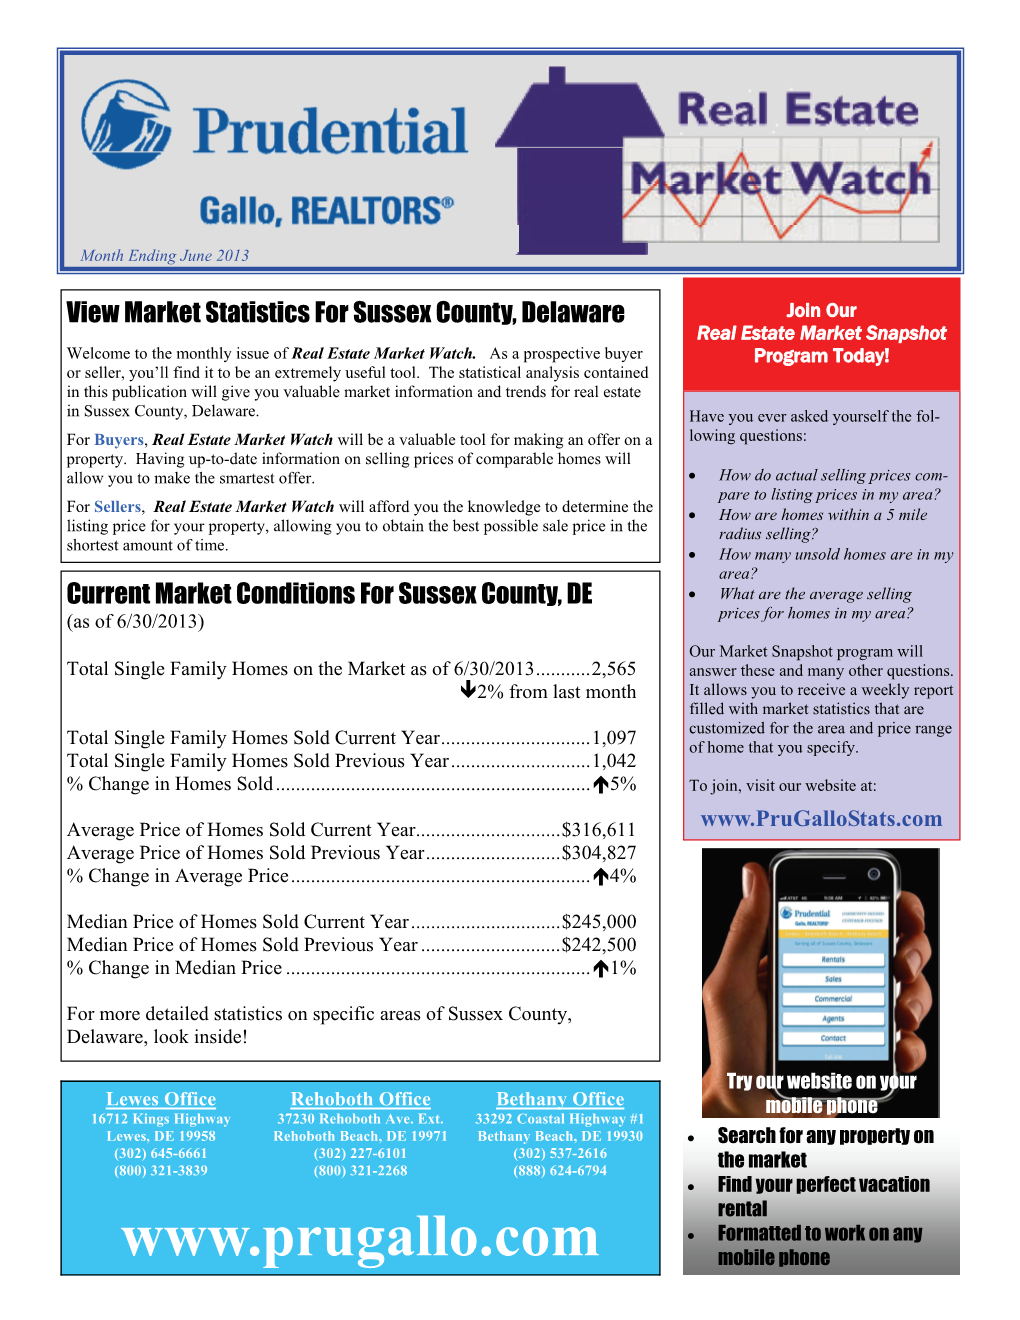 Market Watch Monthly Newsletter